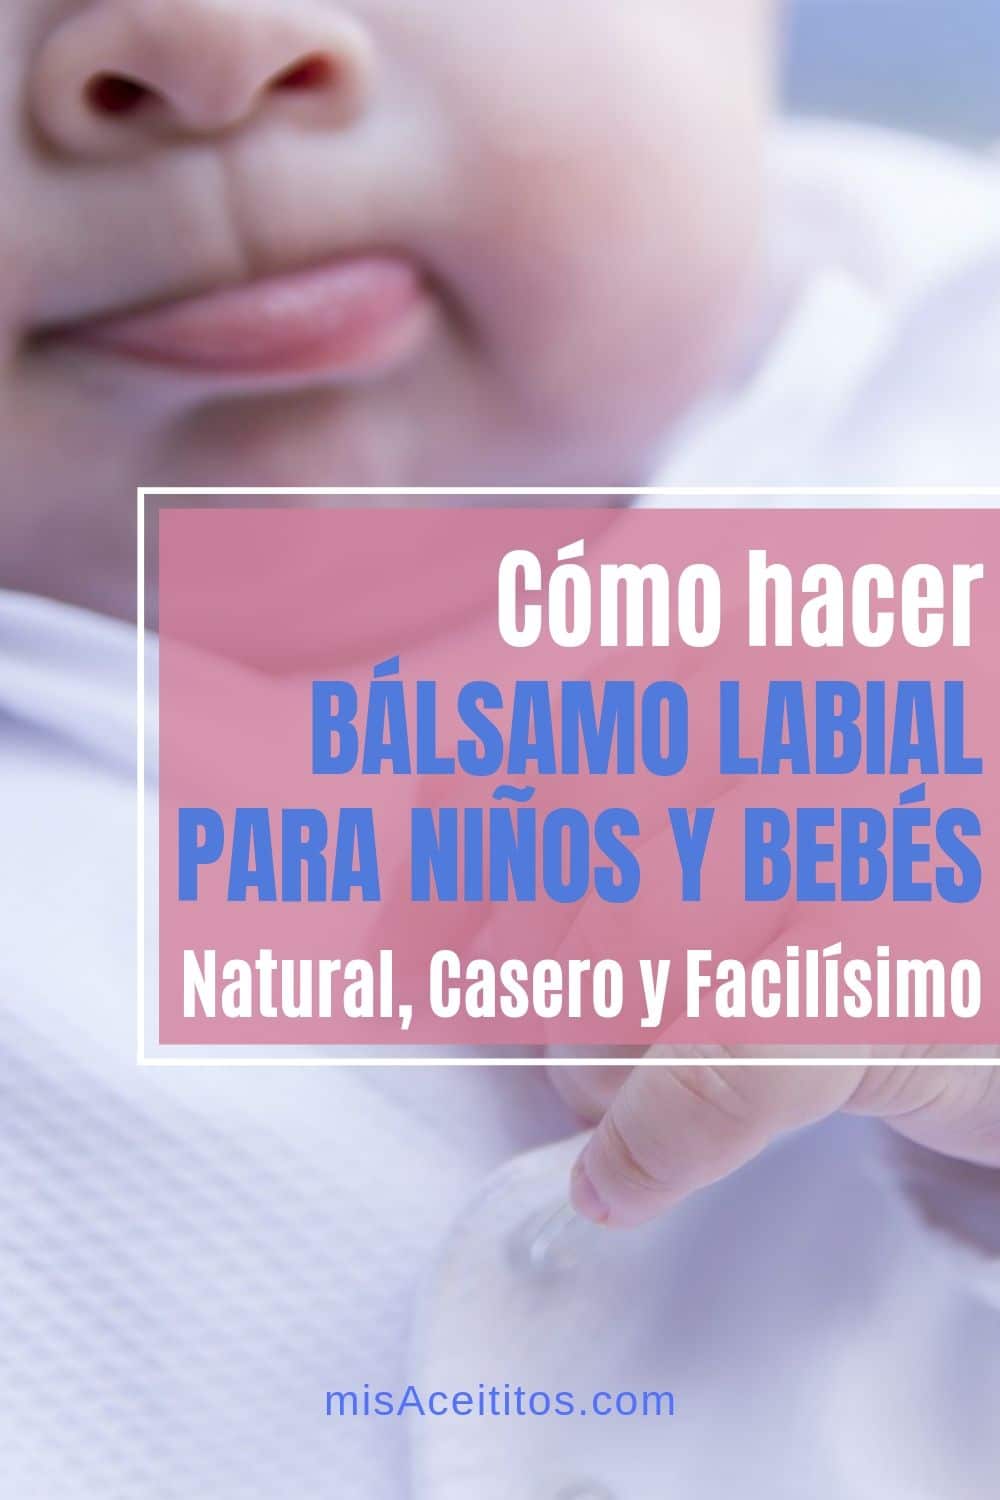 Alivia los labios agrietados de tus hijos con esta receta casera de bálsamo labial para niños y bebés. 100% natural y muy fácil de hacer.